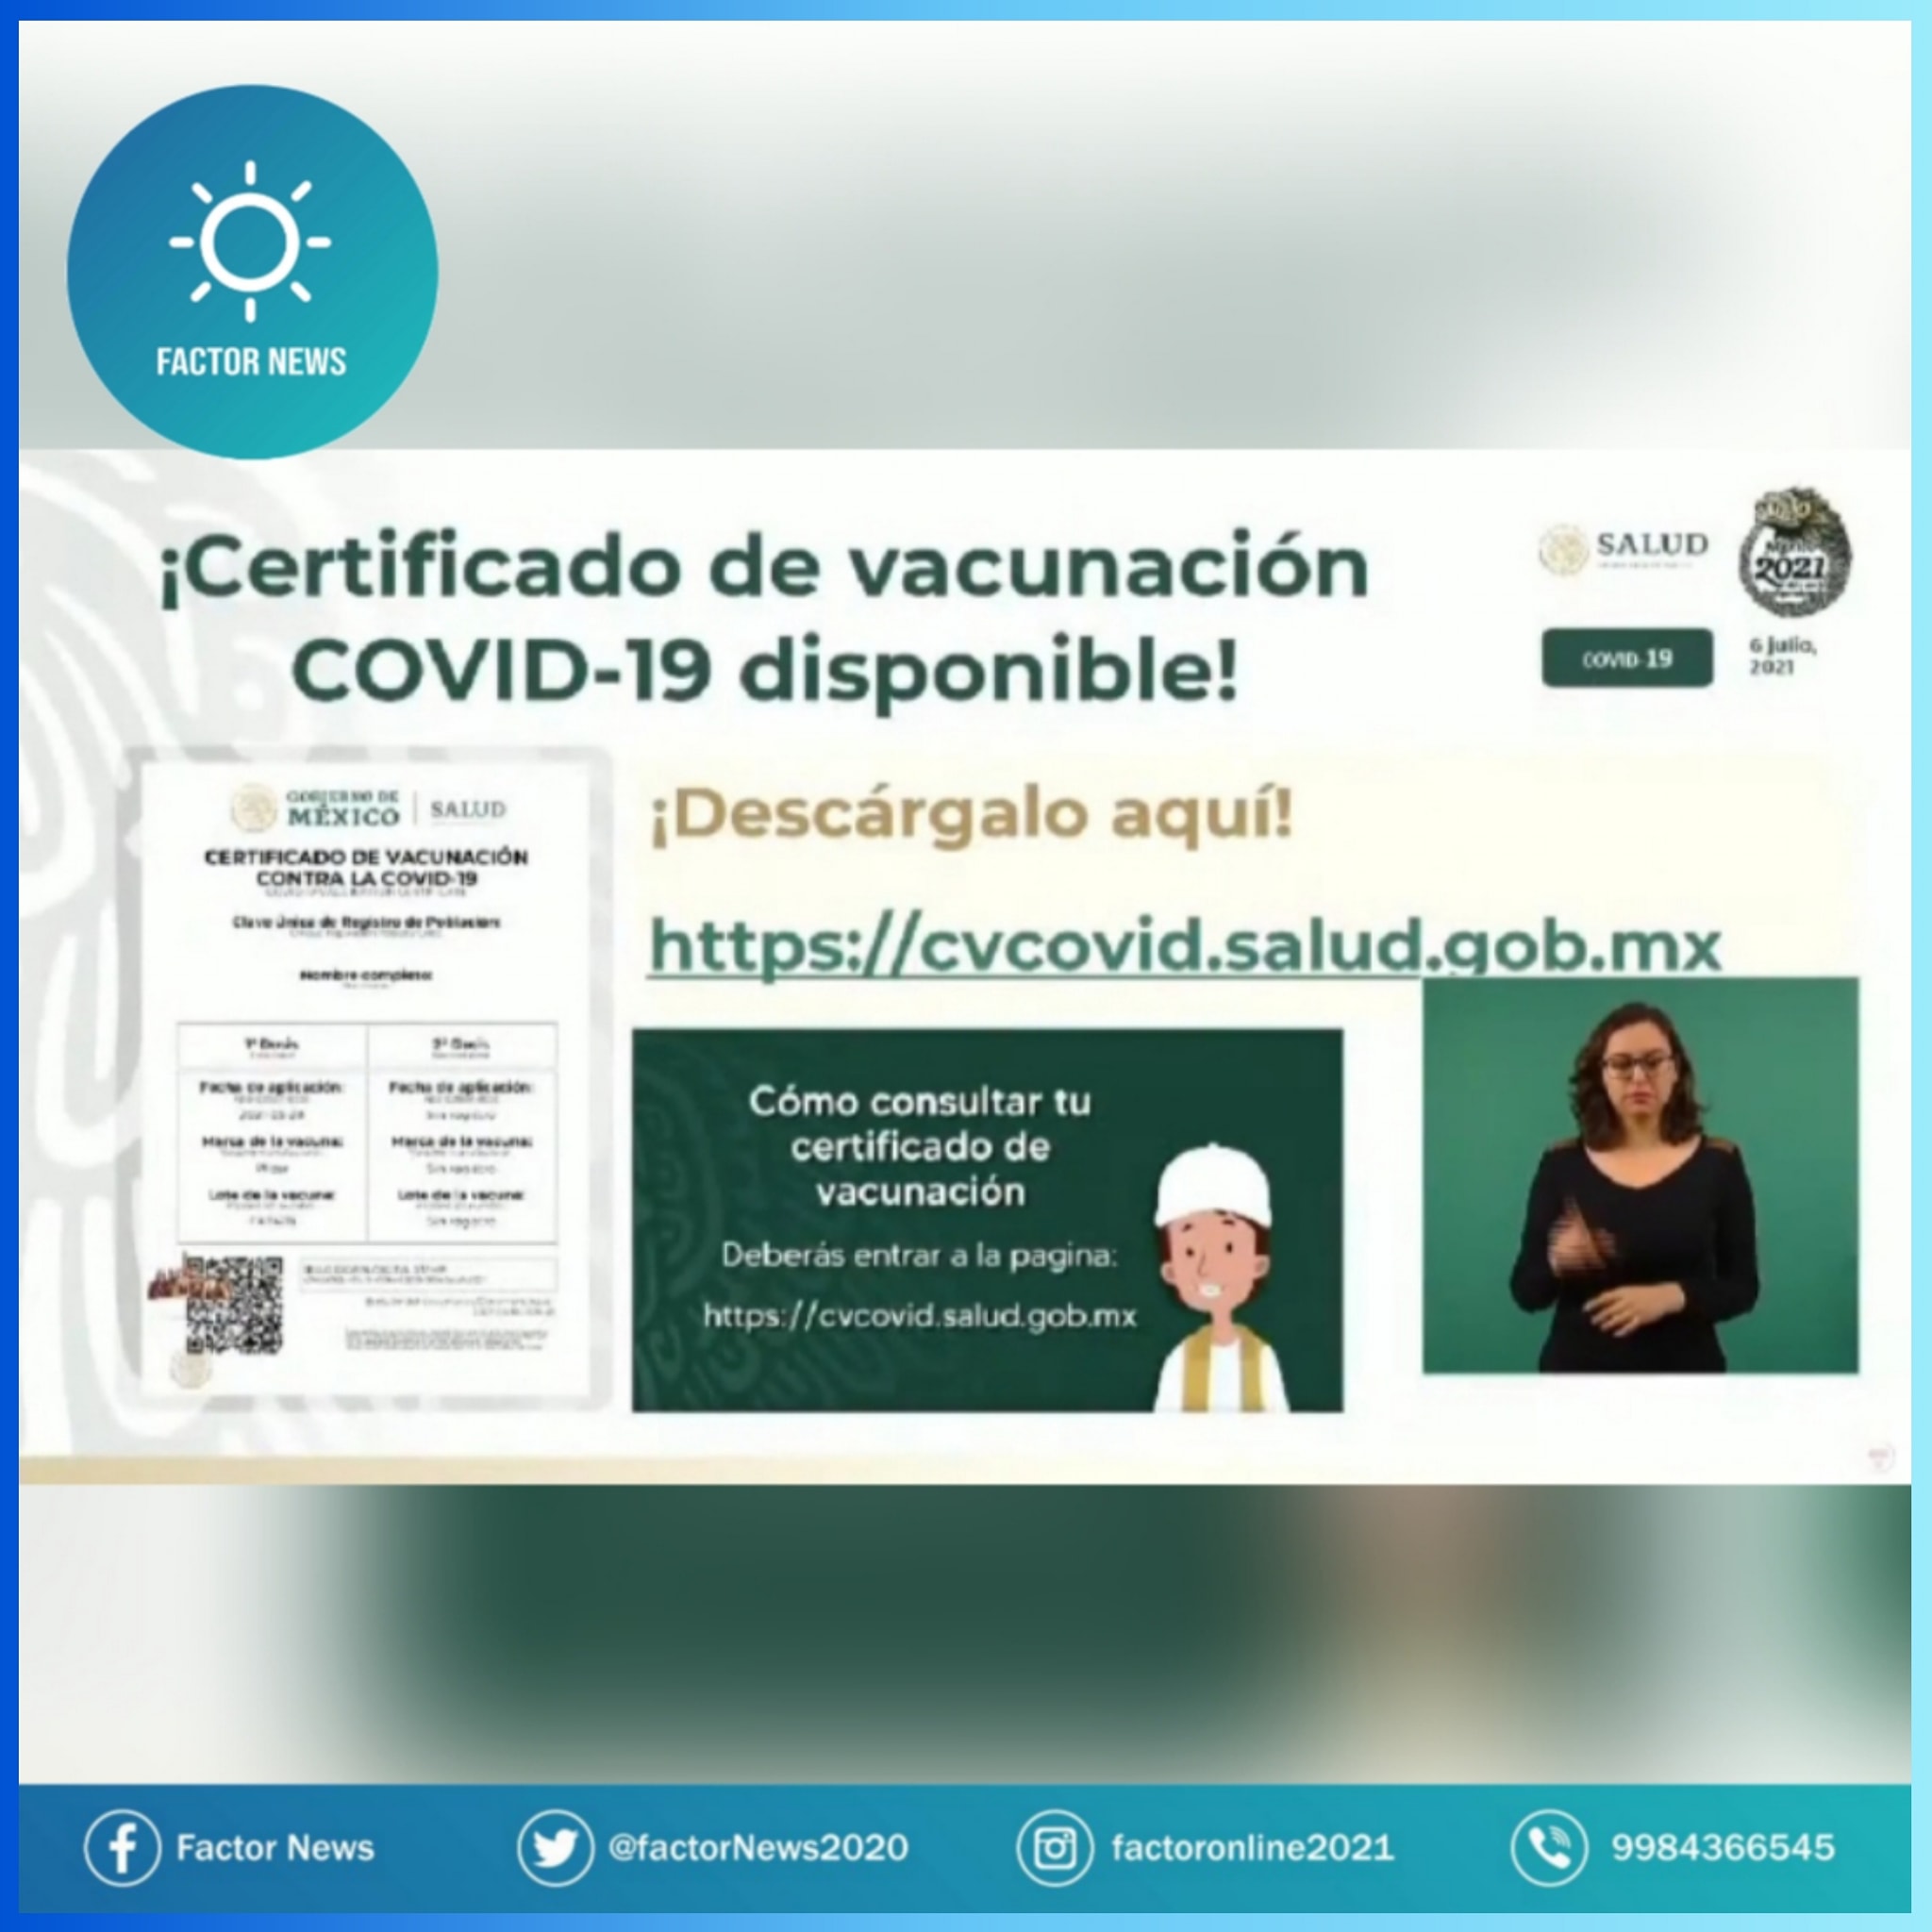 ¿Ya te vacunaste? Aquí puedes descargar tu certificado de vacunación COVID19 que ya se encuentra disponible.